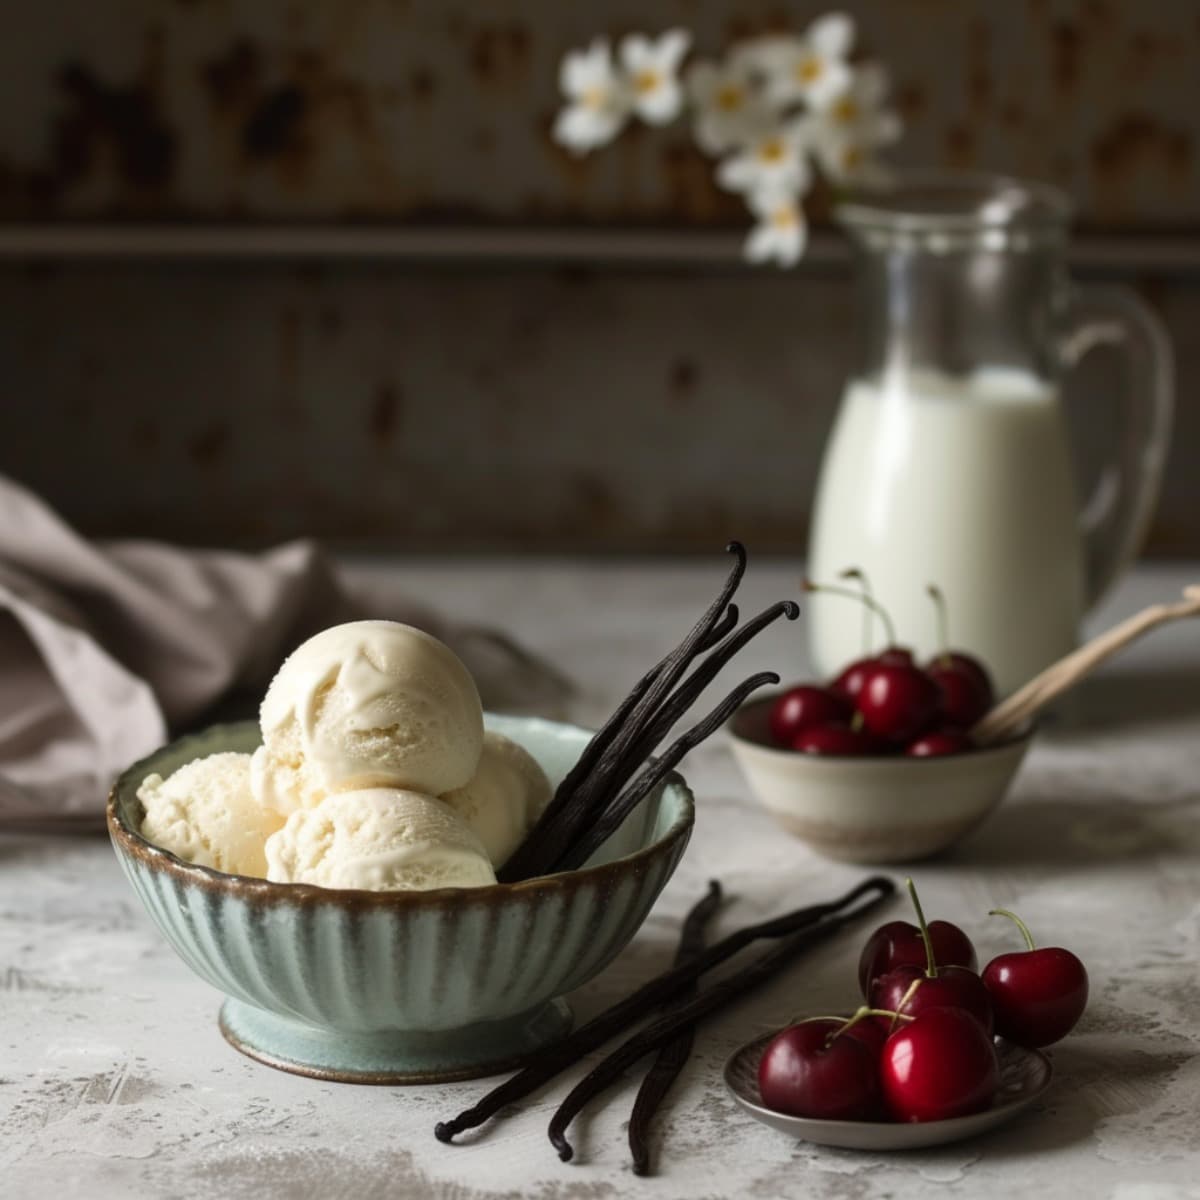 Vanilla Milkshake Ingredients: Vanilla Ice Cream, Milk, Vanilla Beans, Cherries